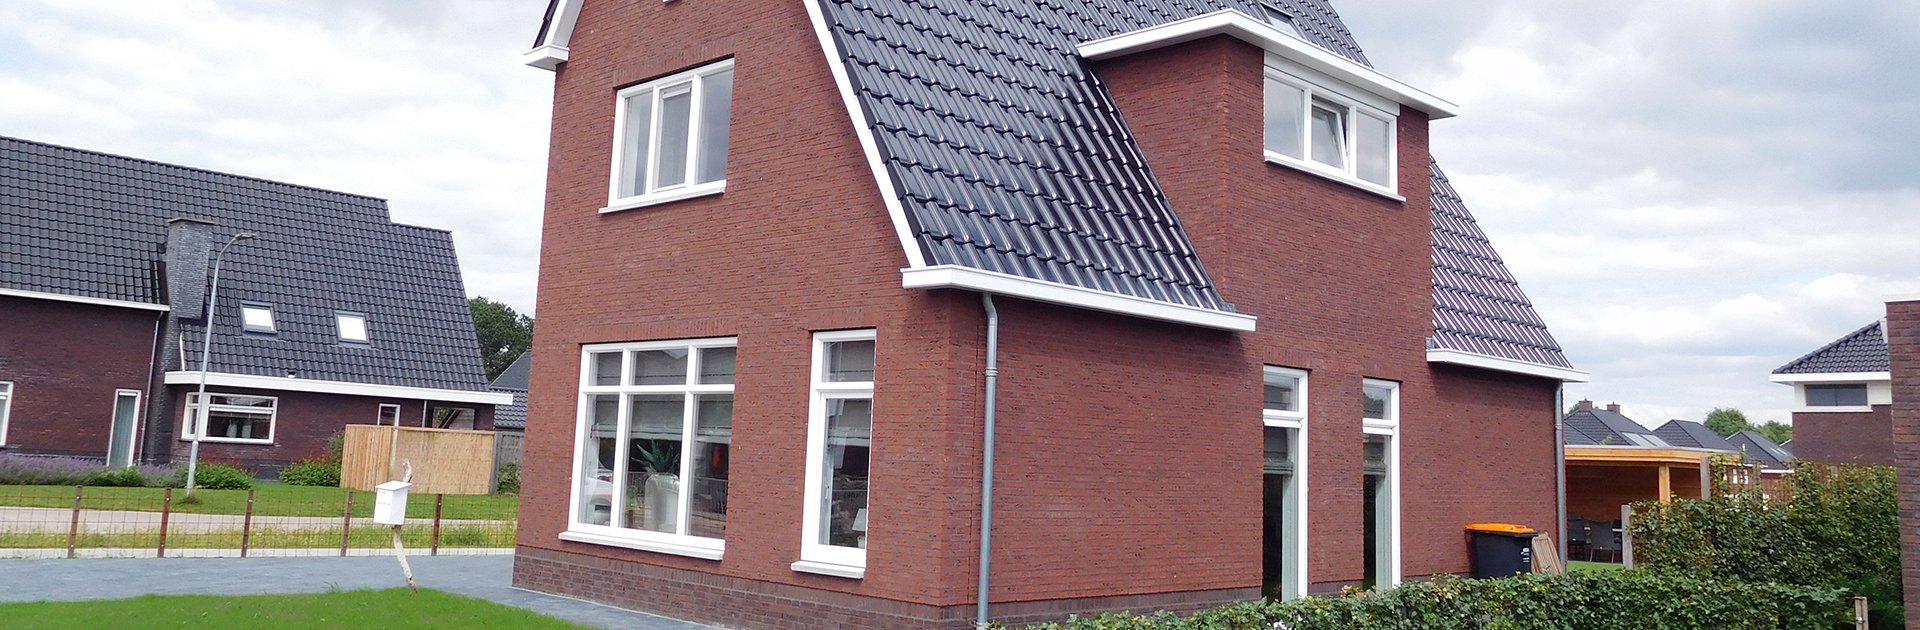 Foto Nieuwe woning gebouwd in Klazienaveen aan de Brugstraat